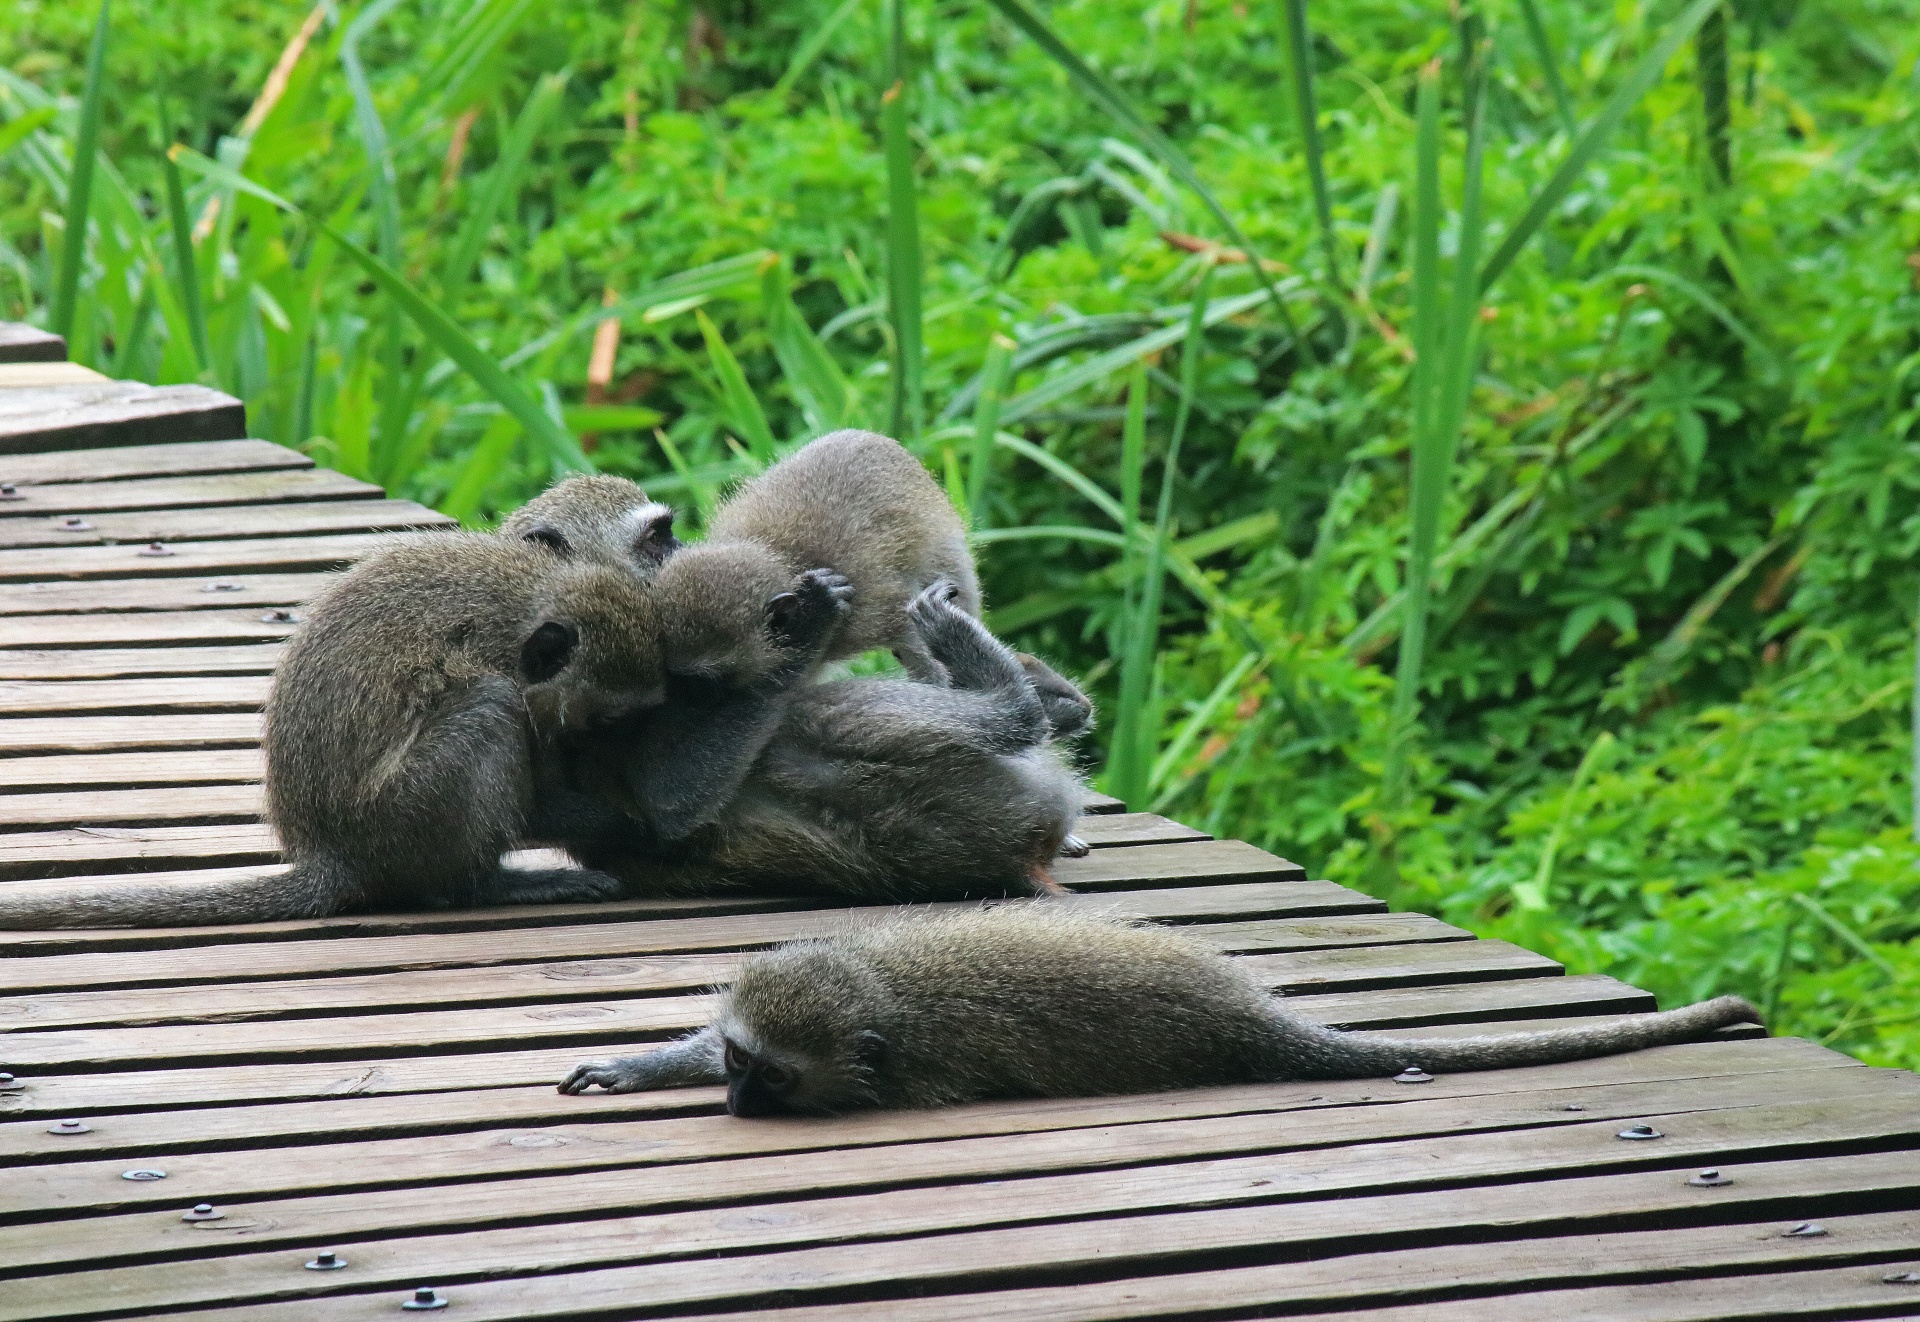 Opice kočkodanů